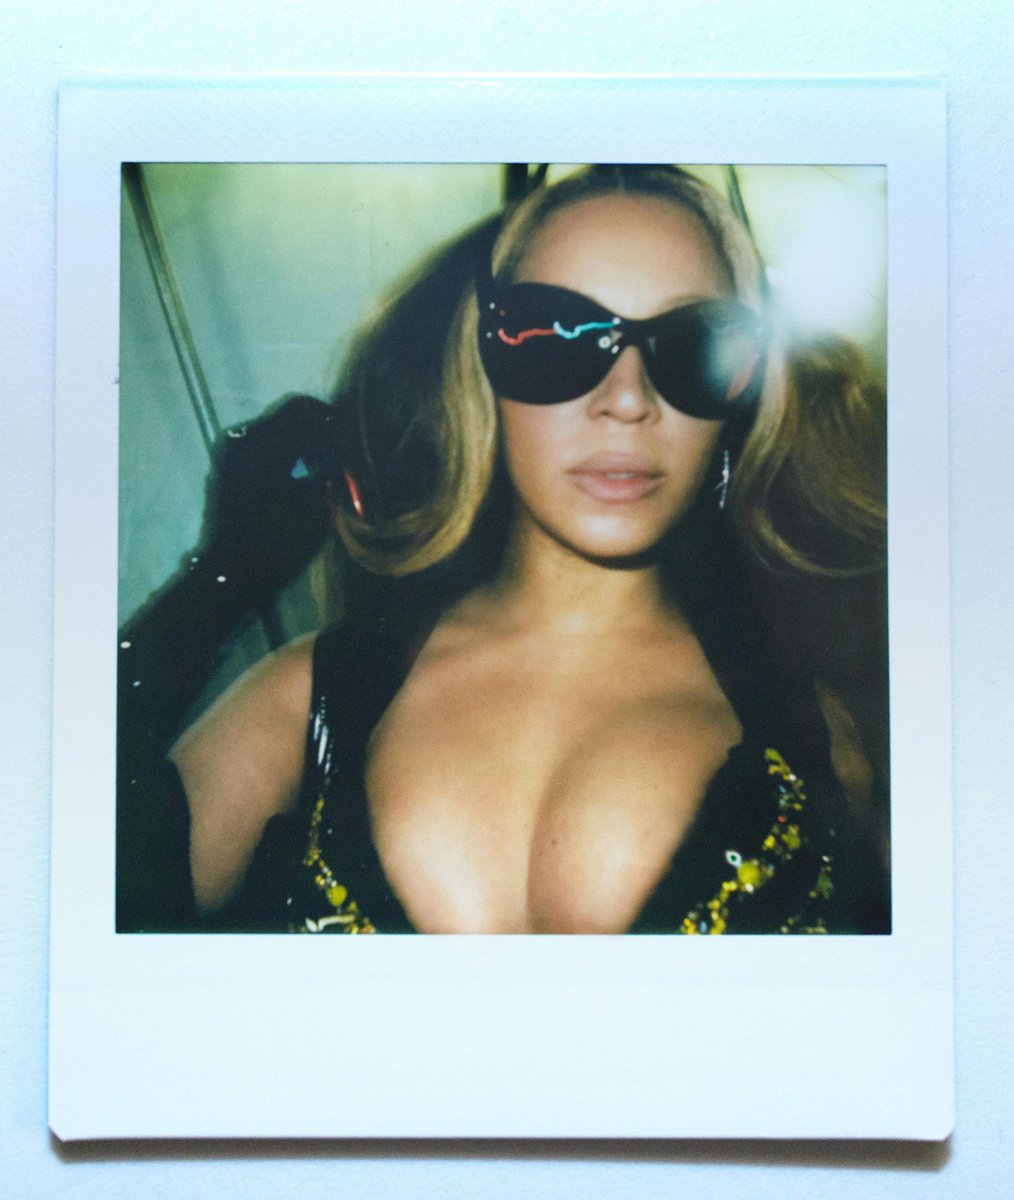 Beyoncé’s eyewear at RWT (a thread)